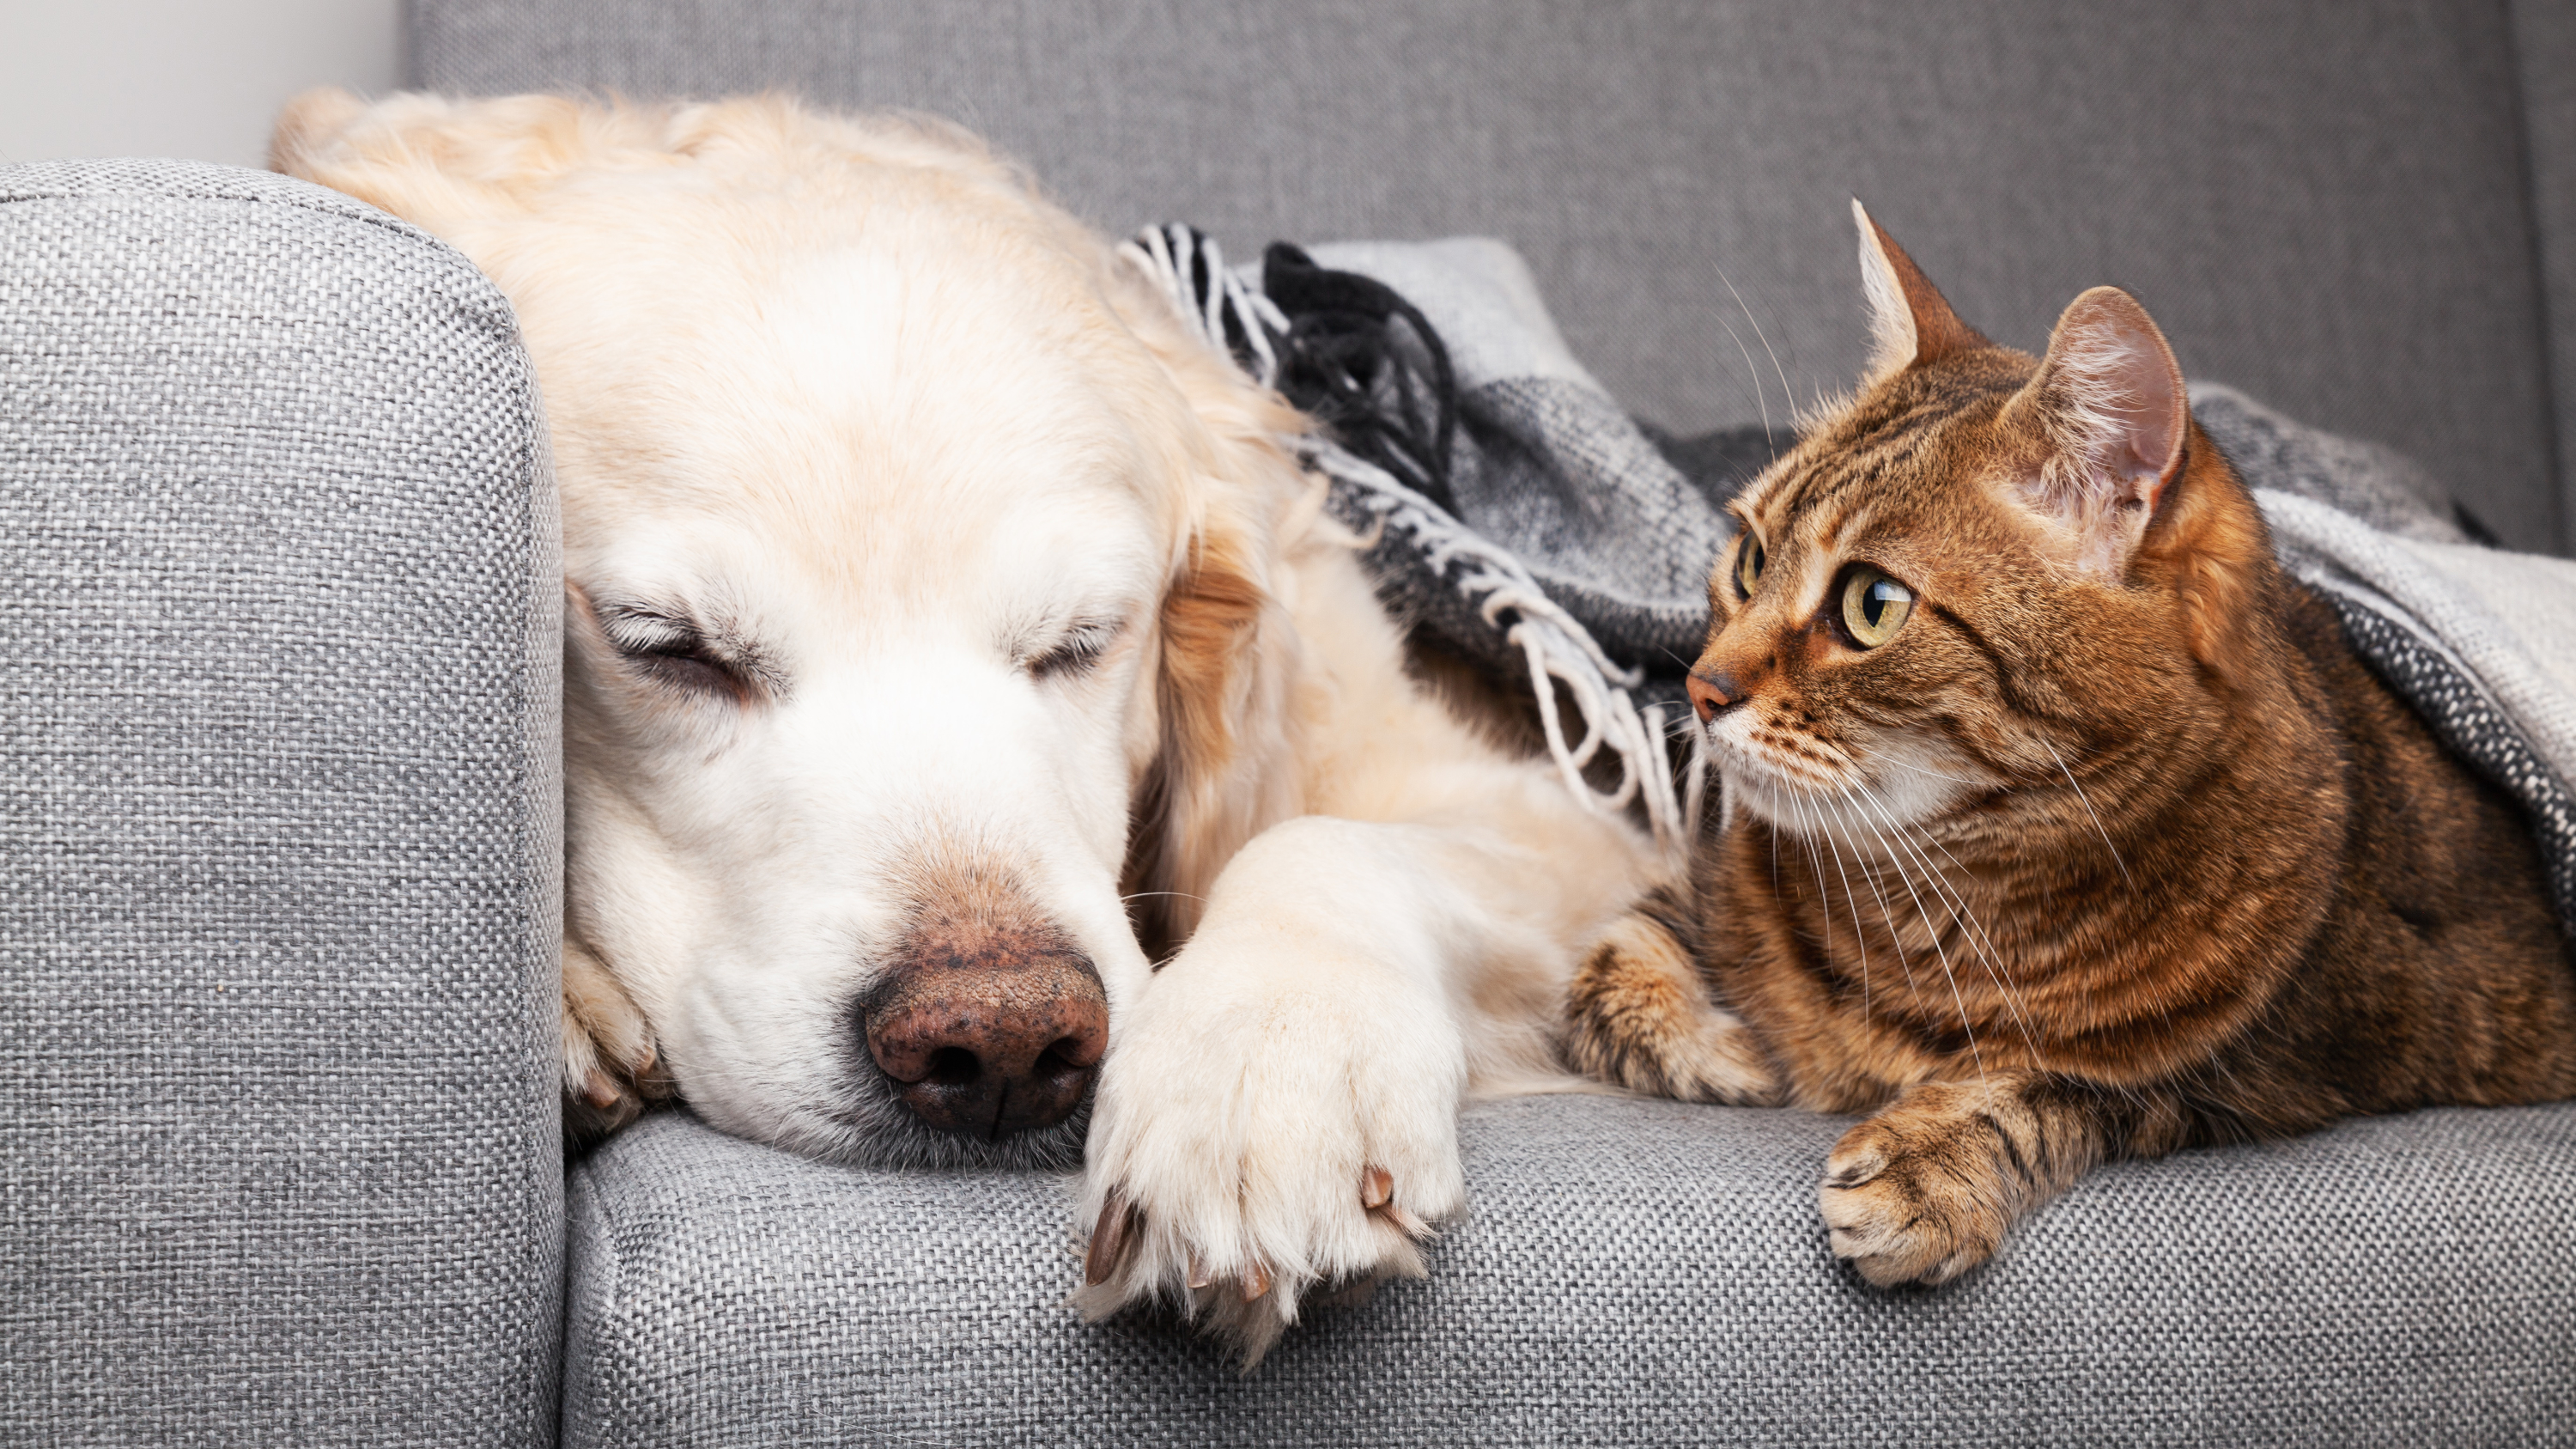 Avoir des animaux domestiques dans une maison peut engendrer des mauvaises odeurs. ©prystai, Adobe Stock 